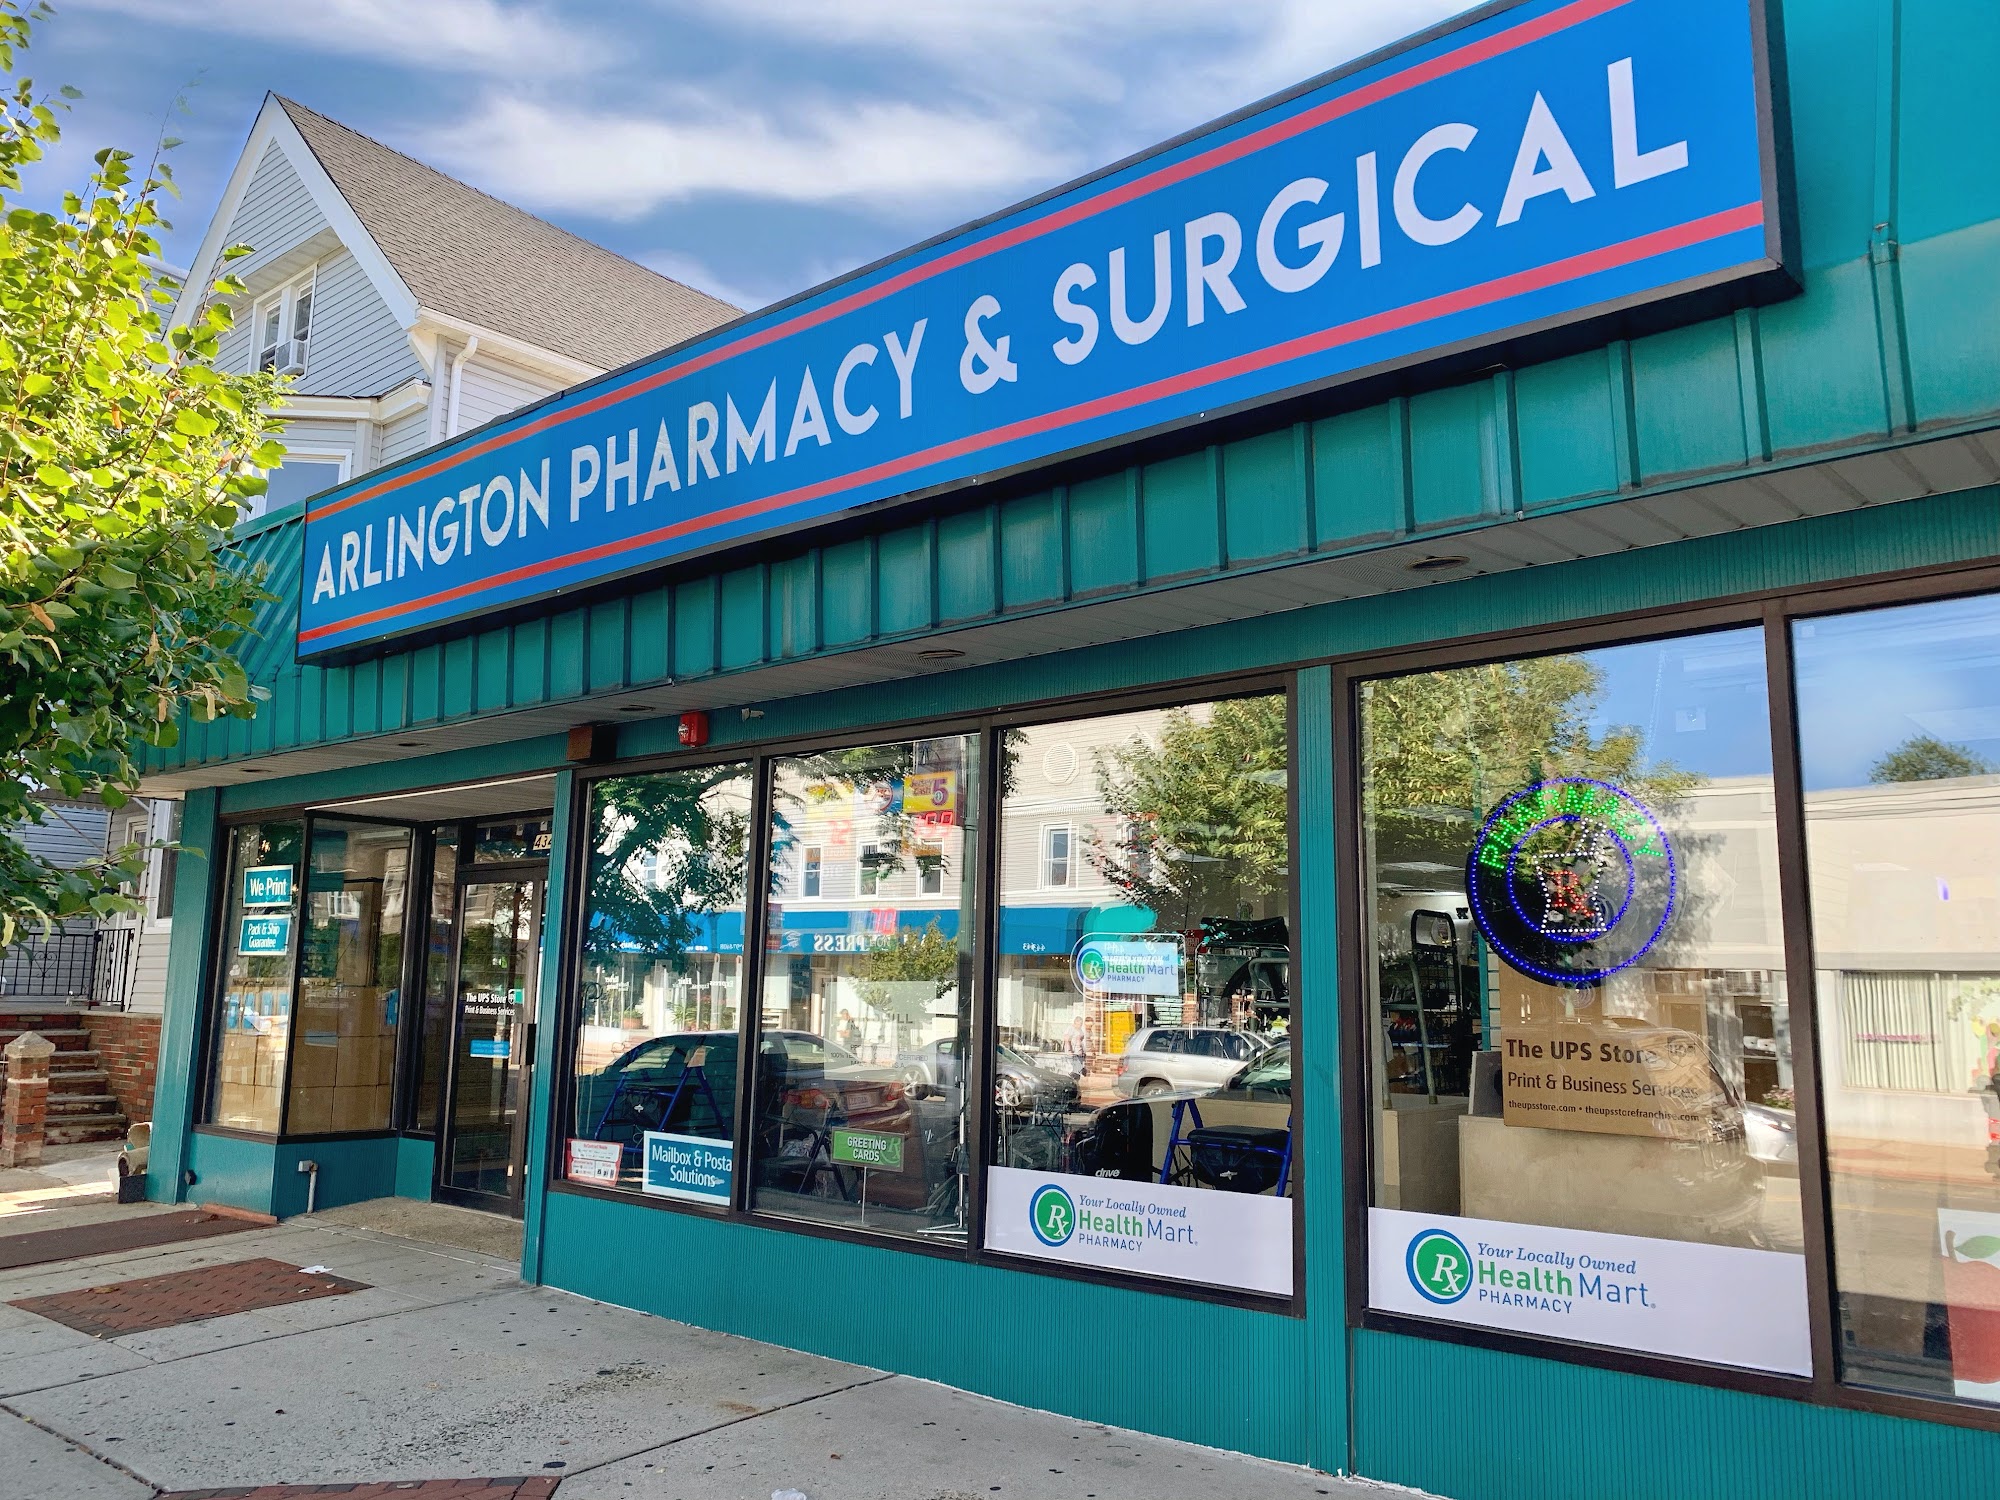 Arlington Pharmacy & Surgical